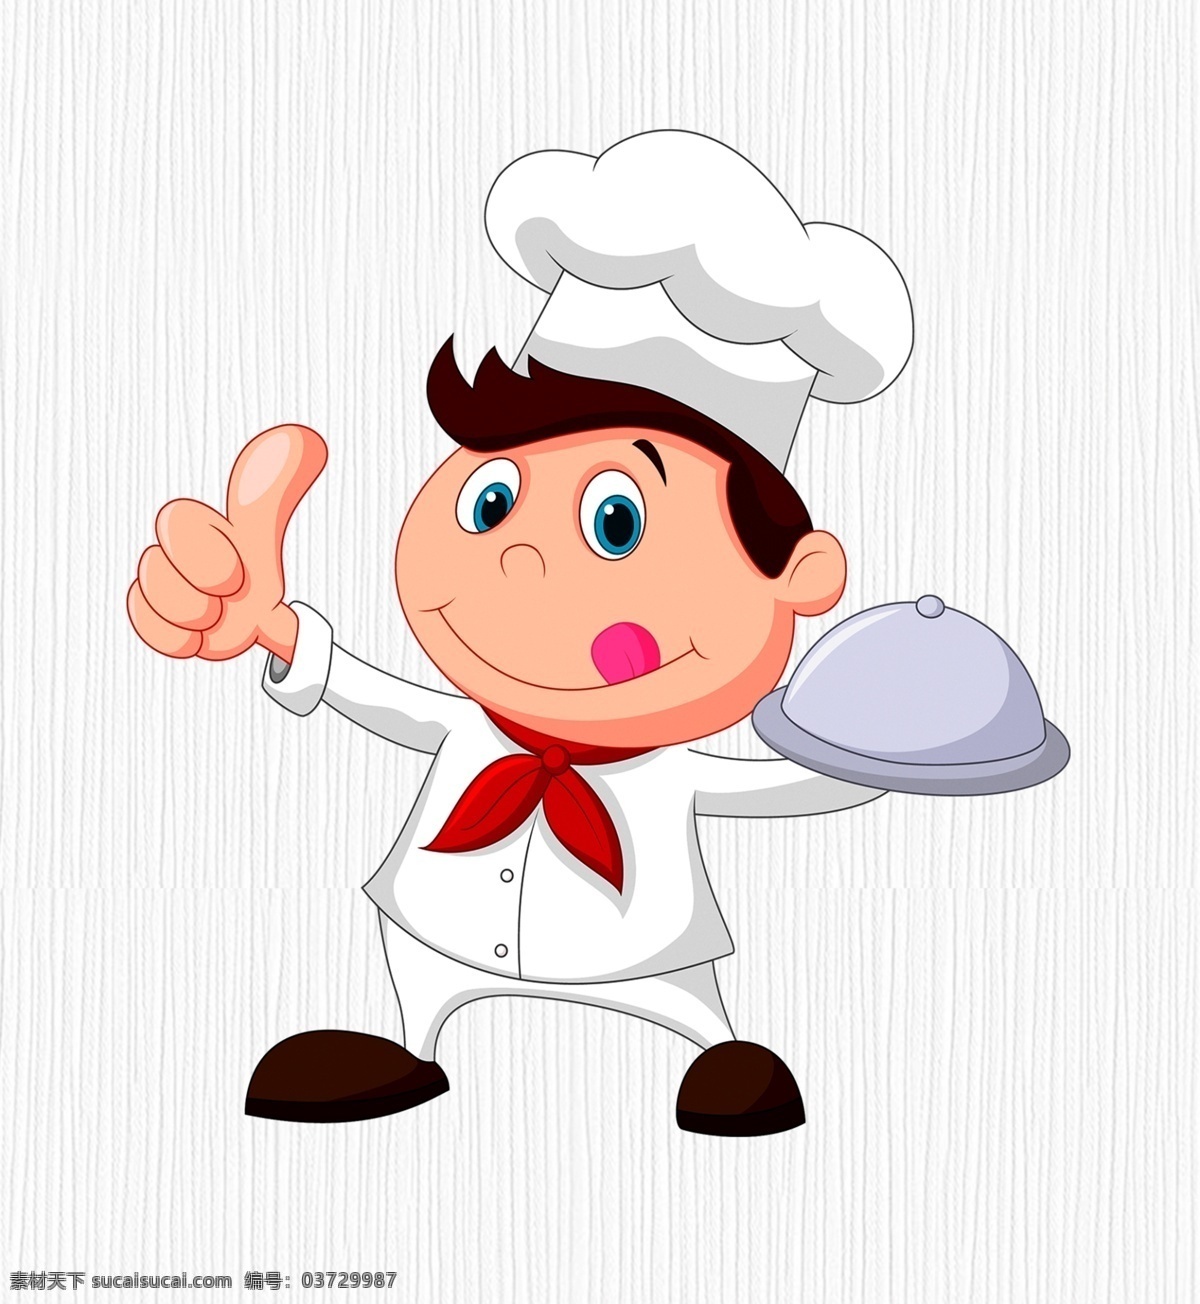 厨师图片 卡通厨师 厨师 服务生 服务员 法国美食 西餐厅 西餐 厨师插图 大餐 菜单 餐饮 职业人物 矢量人物